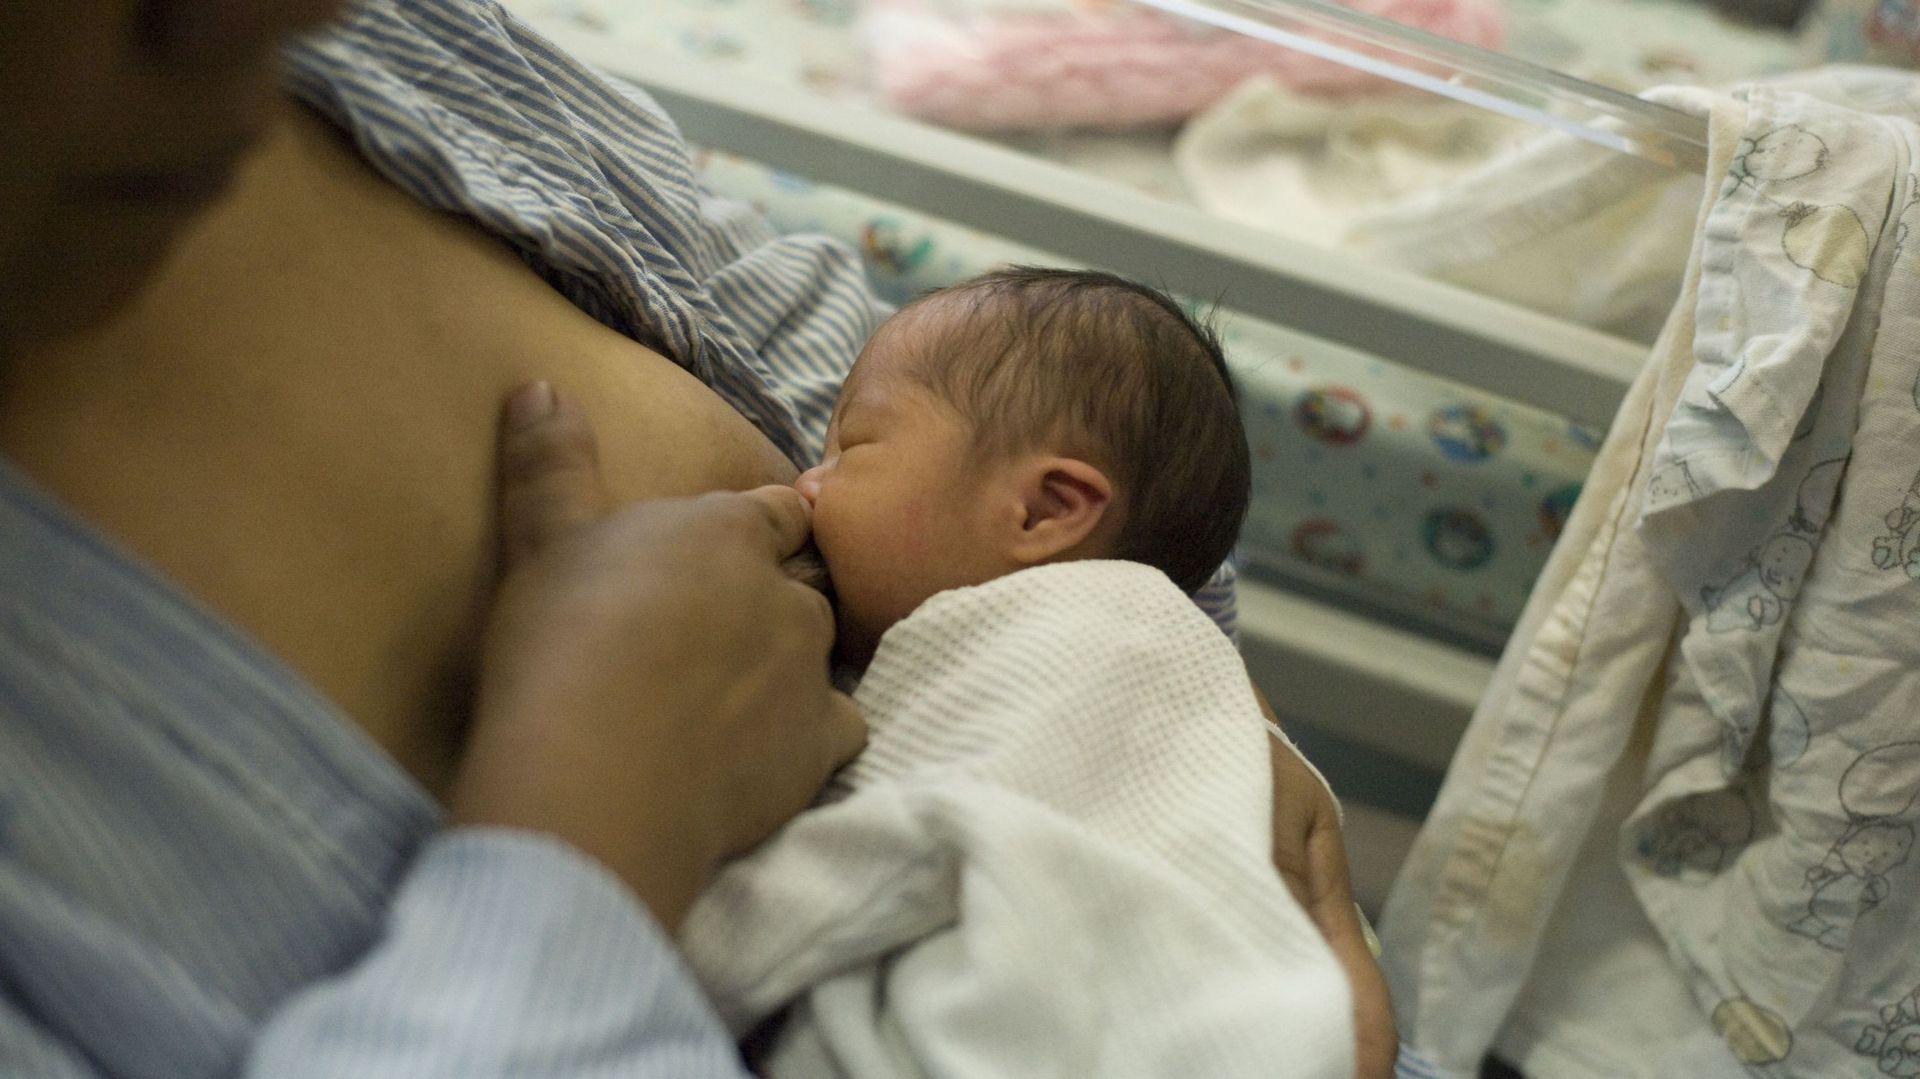 "Rien de plus naturel que de donner le sein à son enfant", estime la secrétaire D’État Bianca Debaets à l'initiative de la campagne #breastfriend (#ami de l'allaitement).